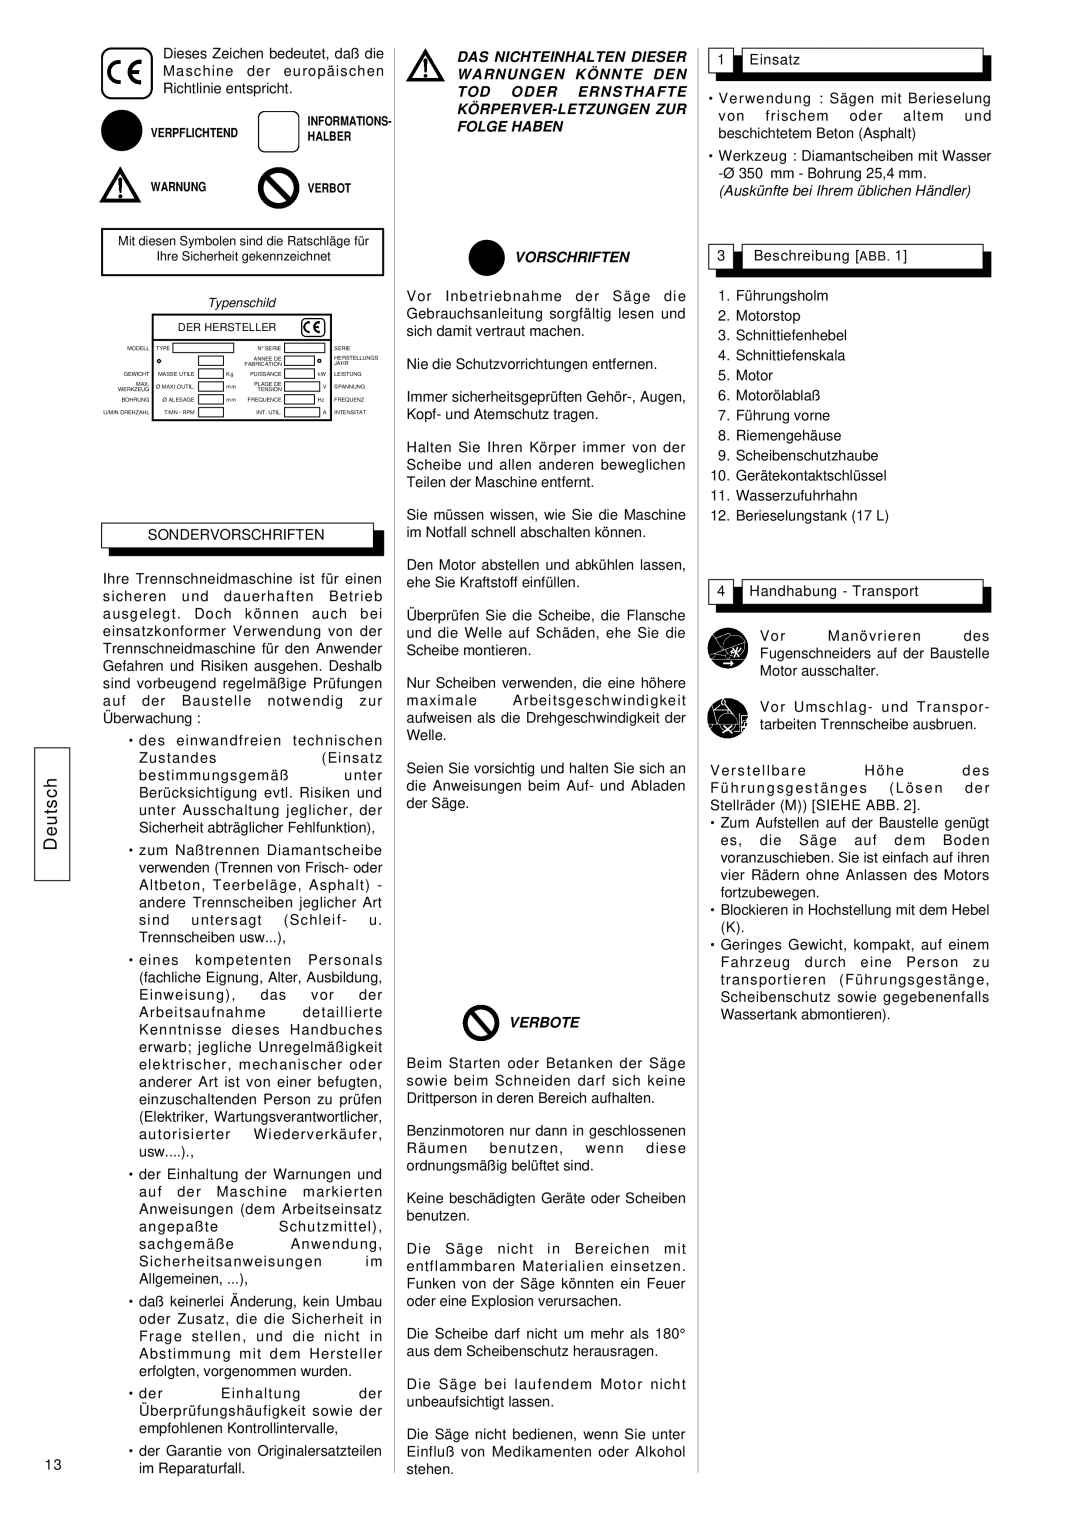 Husqvarna FS309, FS 305 manuel dutilisation Deutsch, Vorschriften, Verbote, Auskünfte bei Ihrem üblichen Händler 